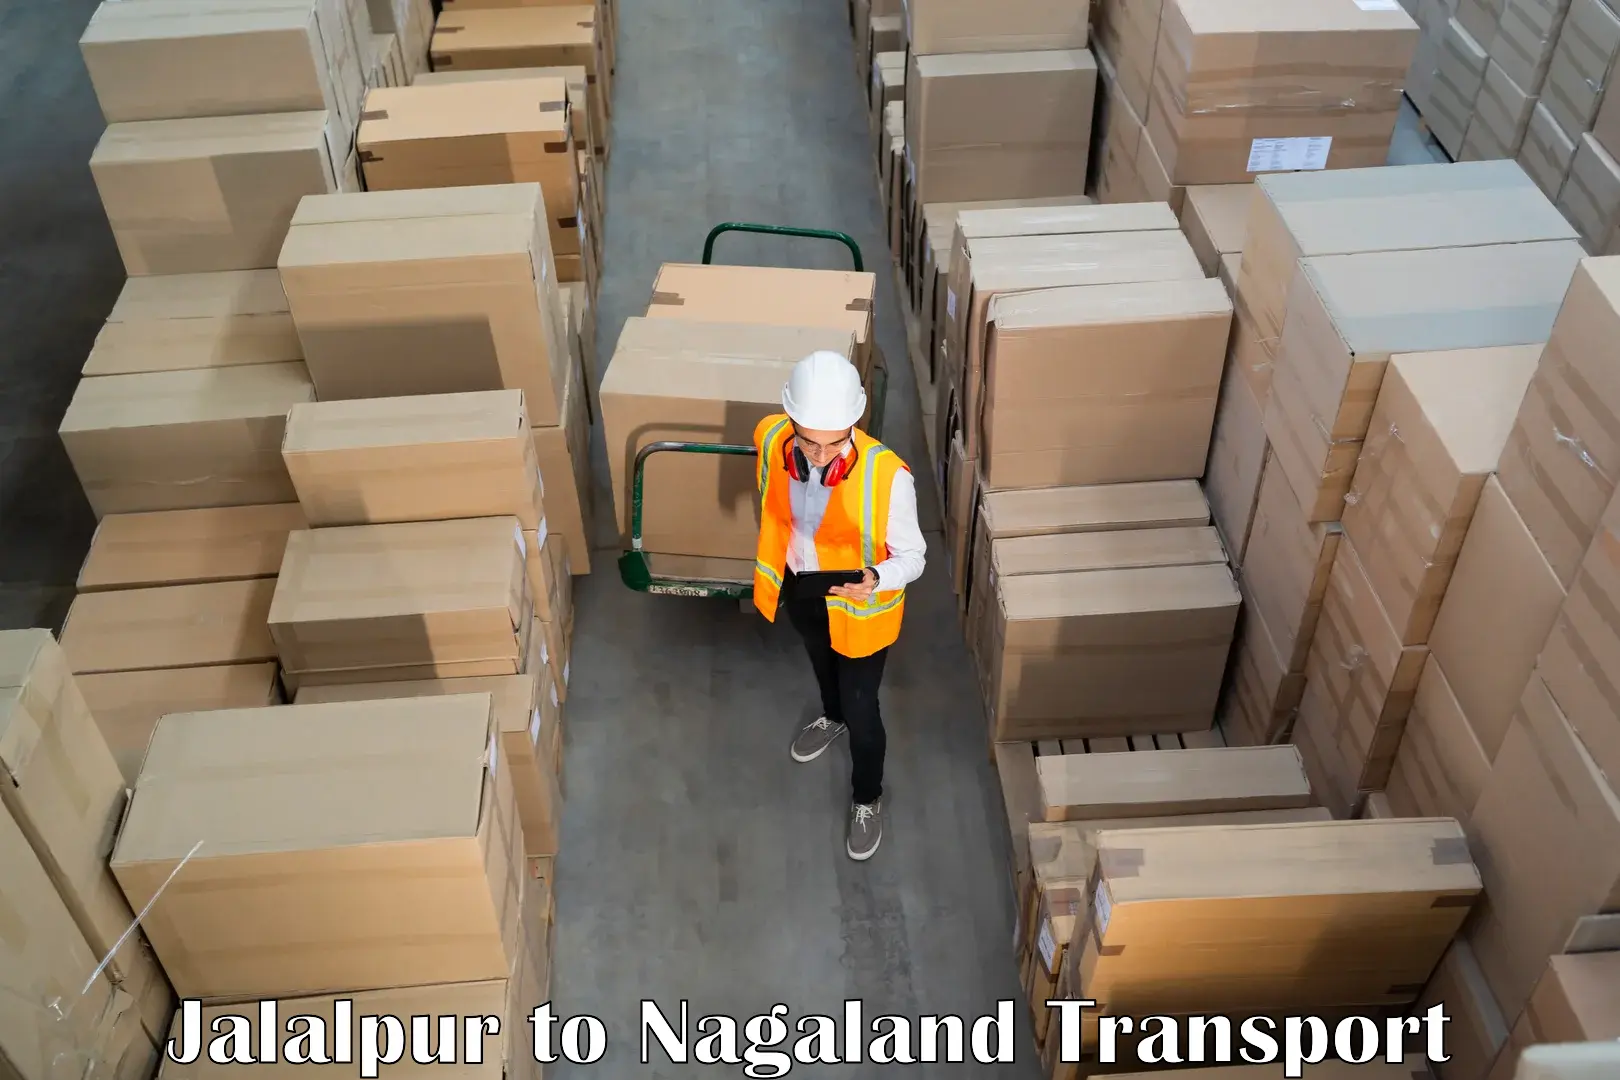 Road transport online services Jalalpur to Nagaland